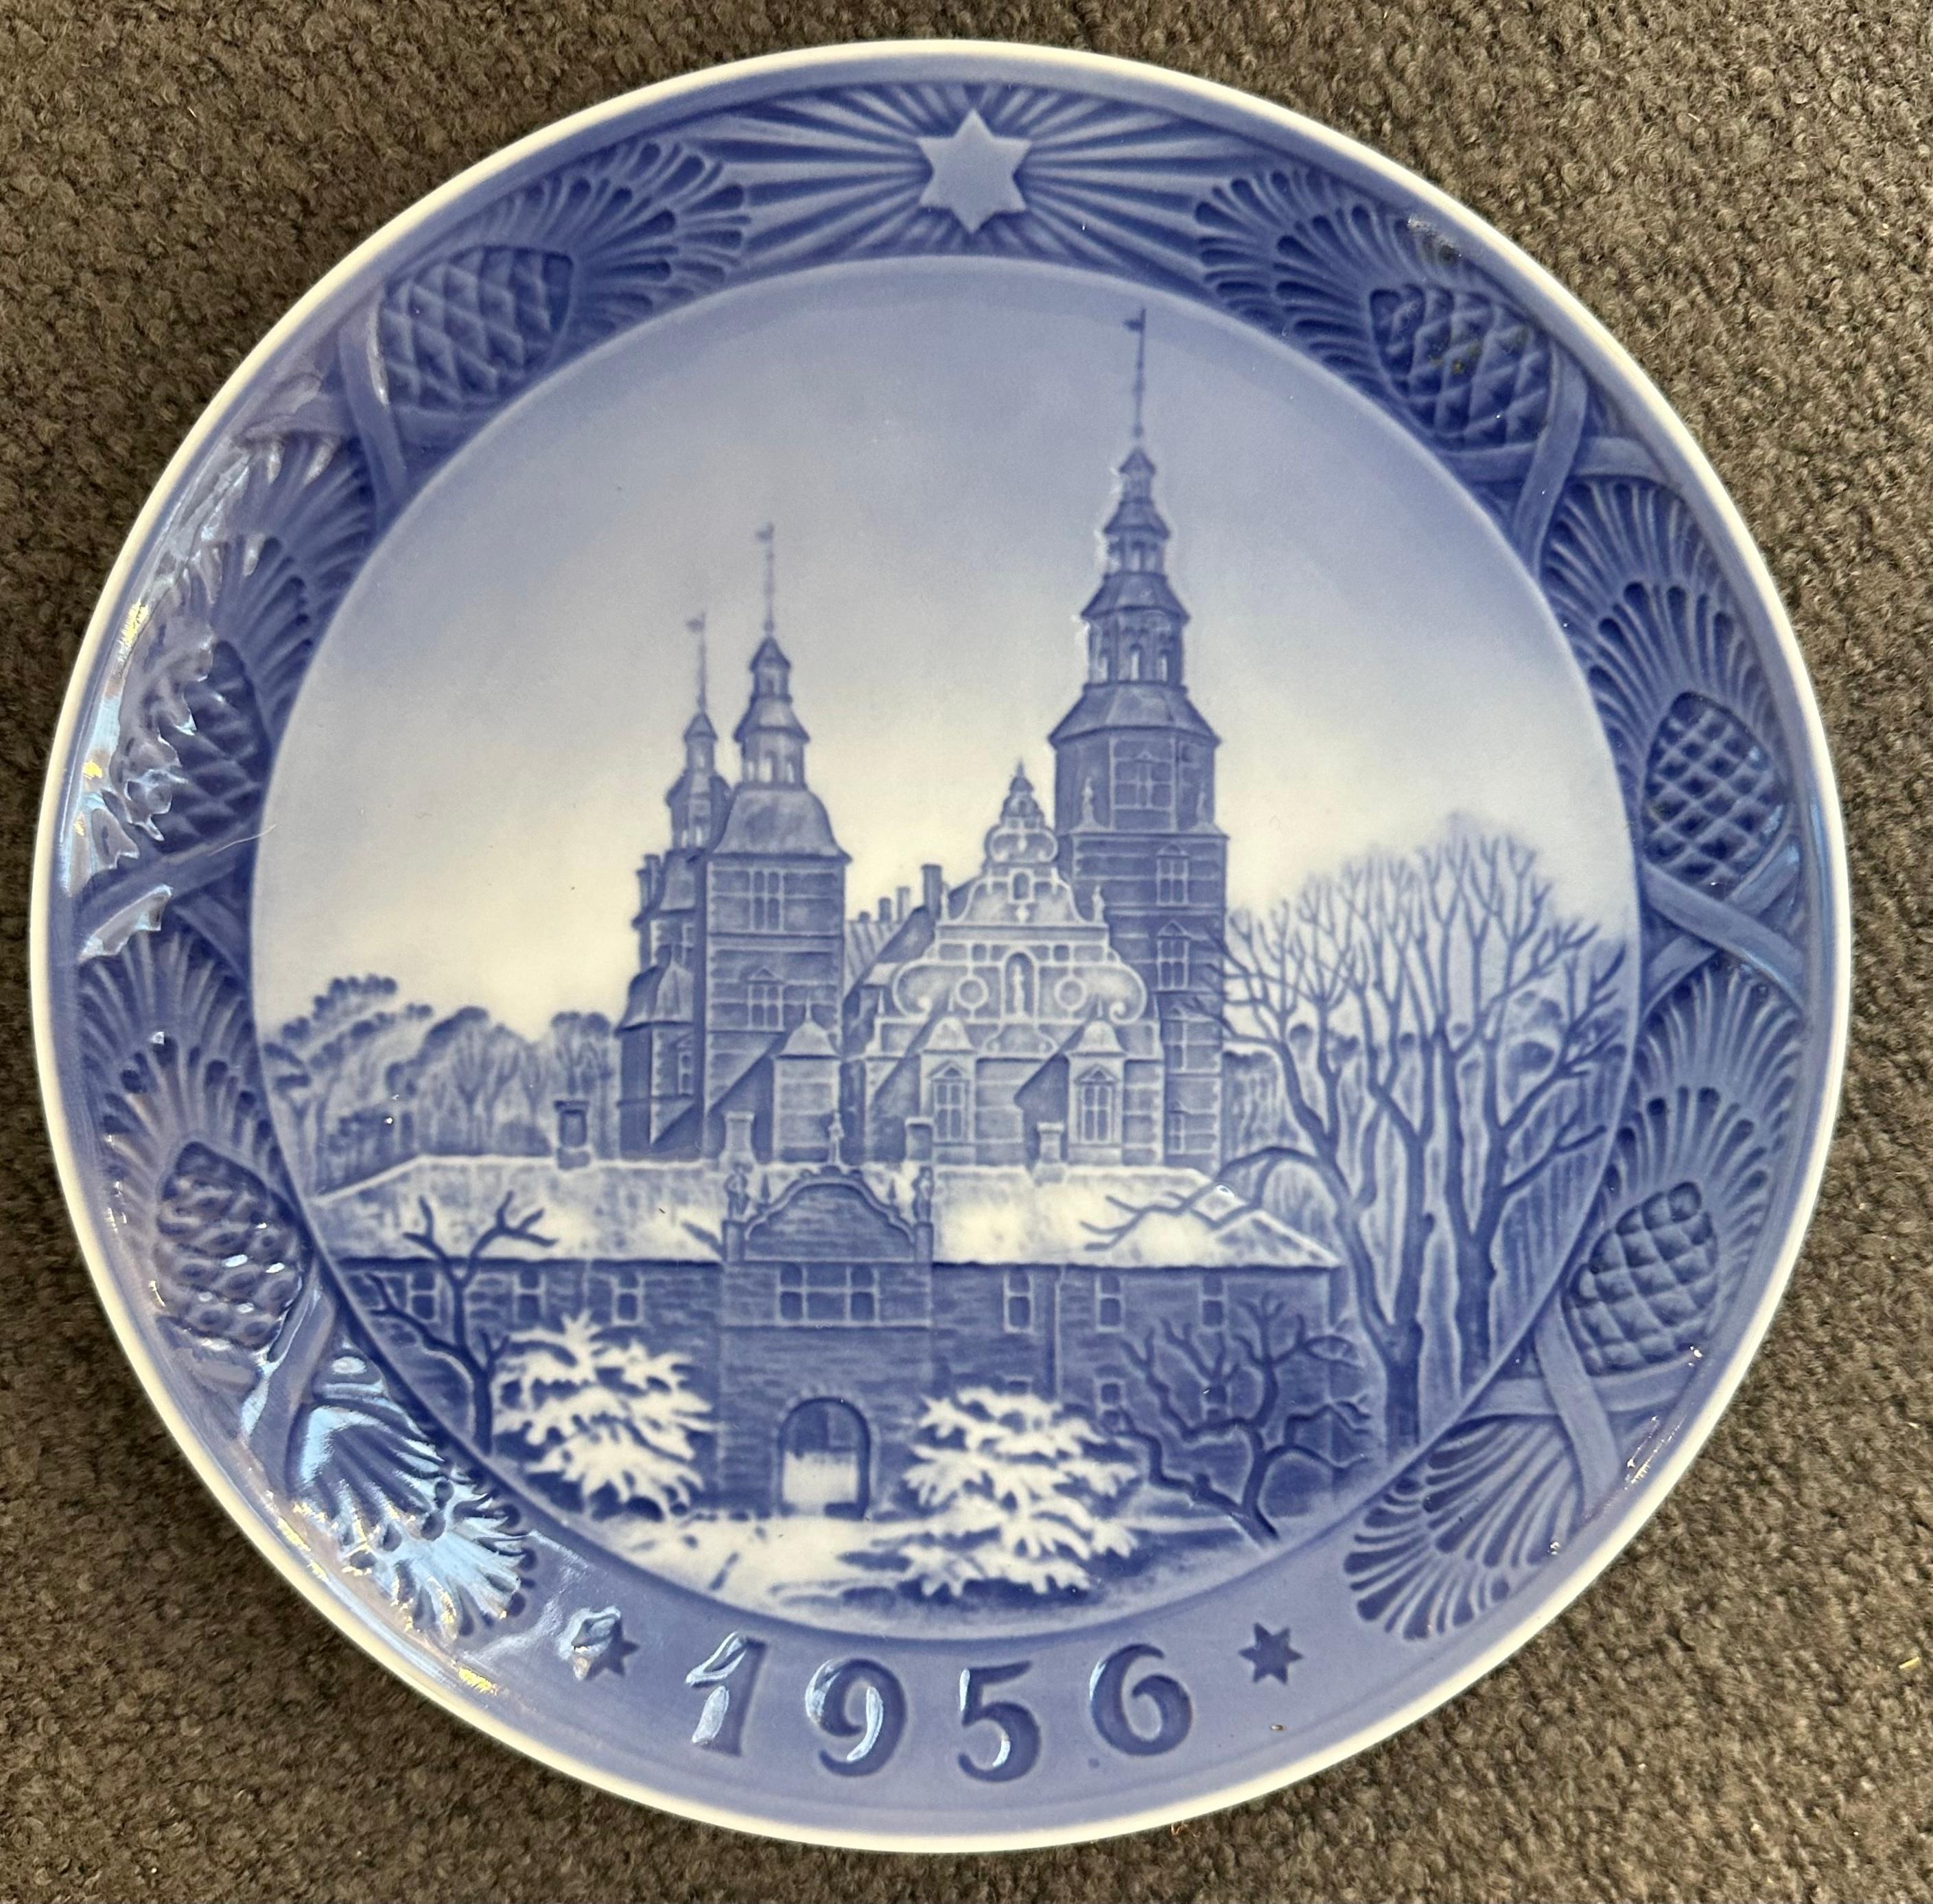 Cette assiette en porcelaine émaillée est l'édition de Noël 1956 de Royal Copenhagen et représente le château de Rosenborg au centre de Copenhague.  Conçu et estampillé au verso par Kai Lange. Le château a été construit par le roi Christian IV comme